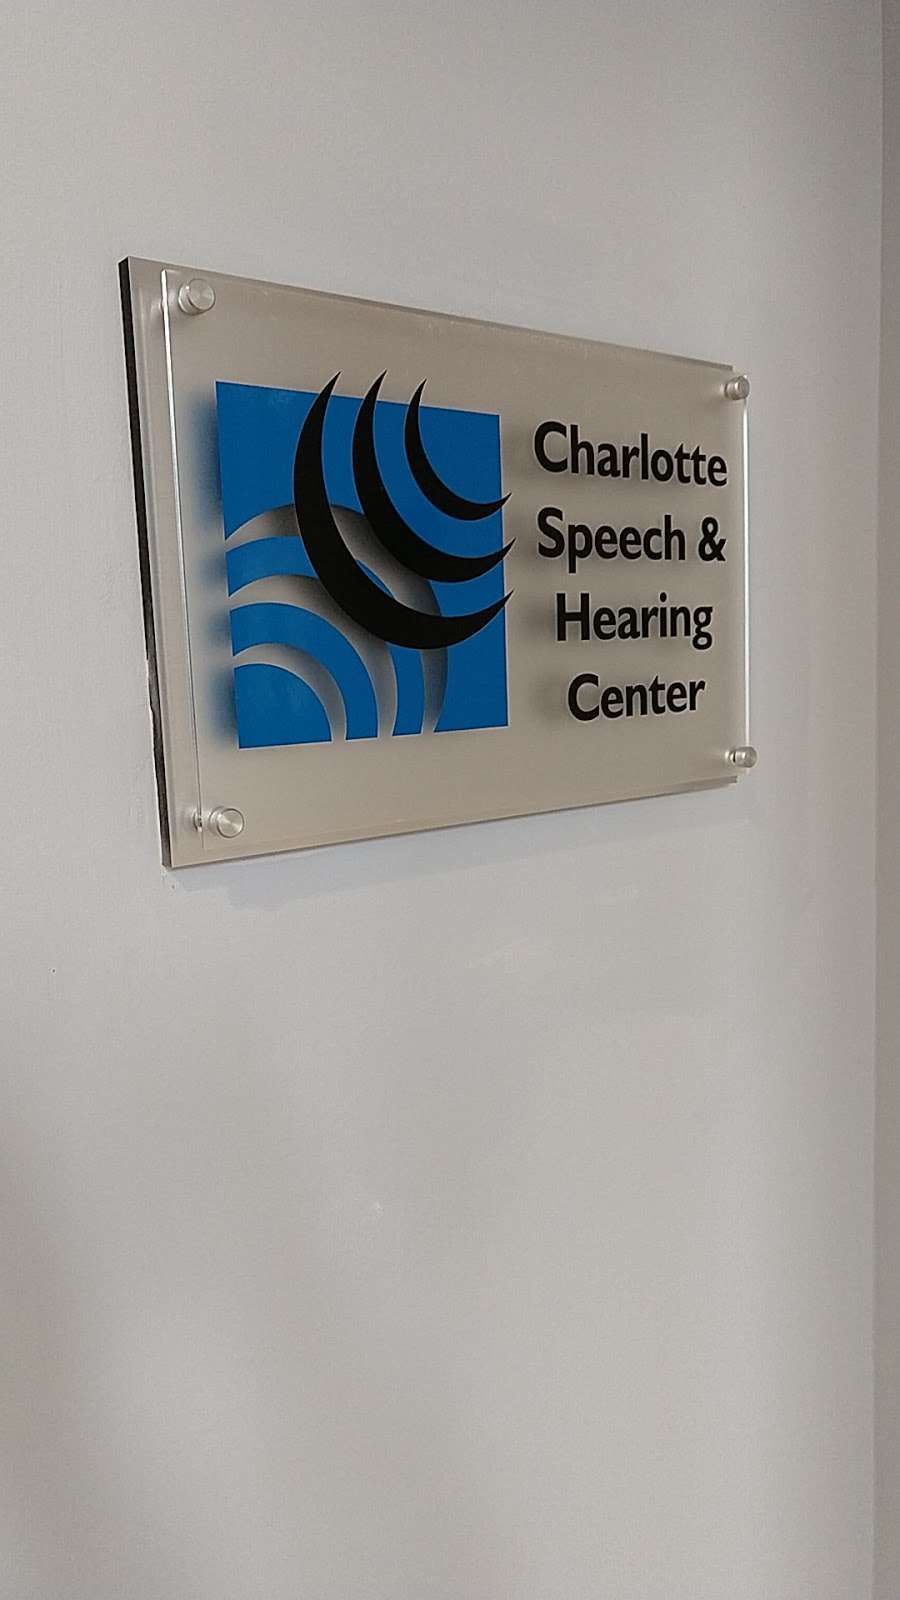 Charlotte Speech and Hearing Center | 2661 W Roosevelt Blvd #103 D, Monroe, NC 28110, USA | Phone: (704) 523-8027